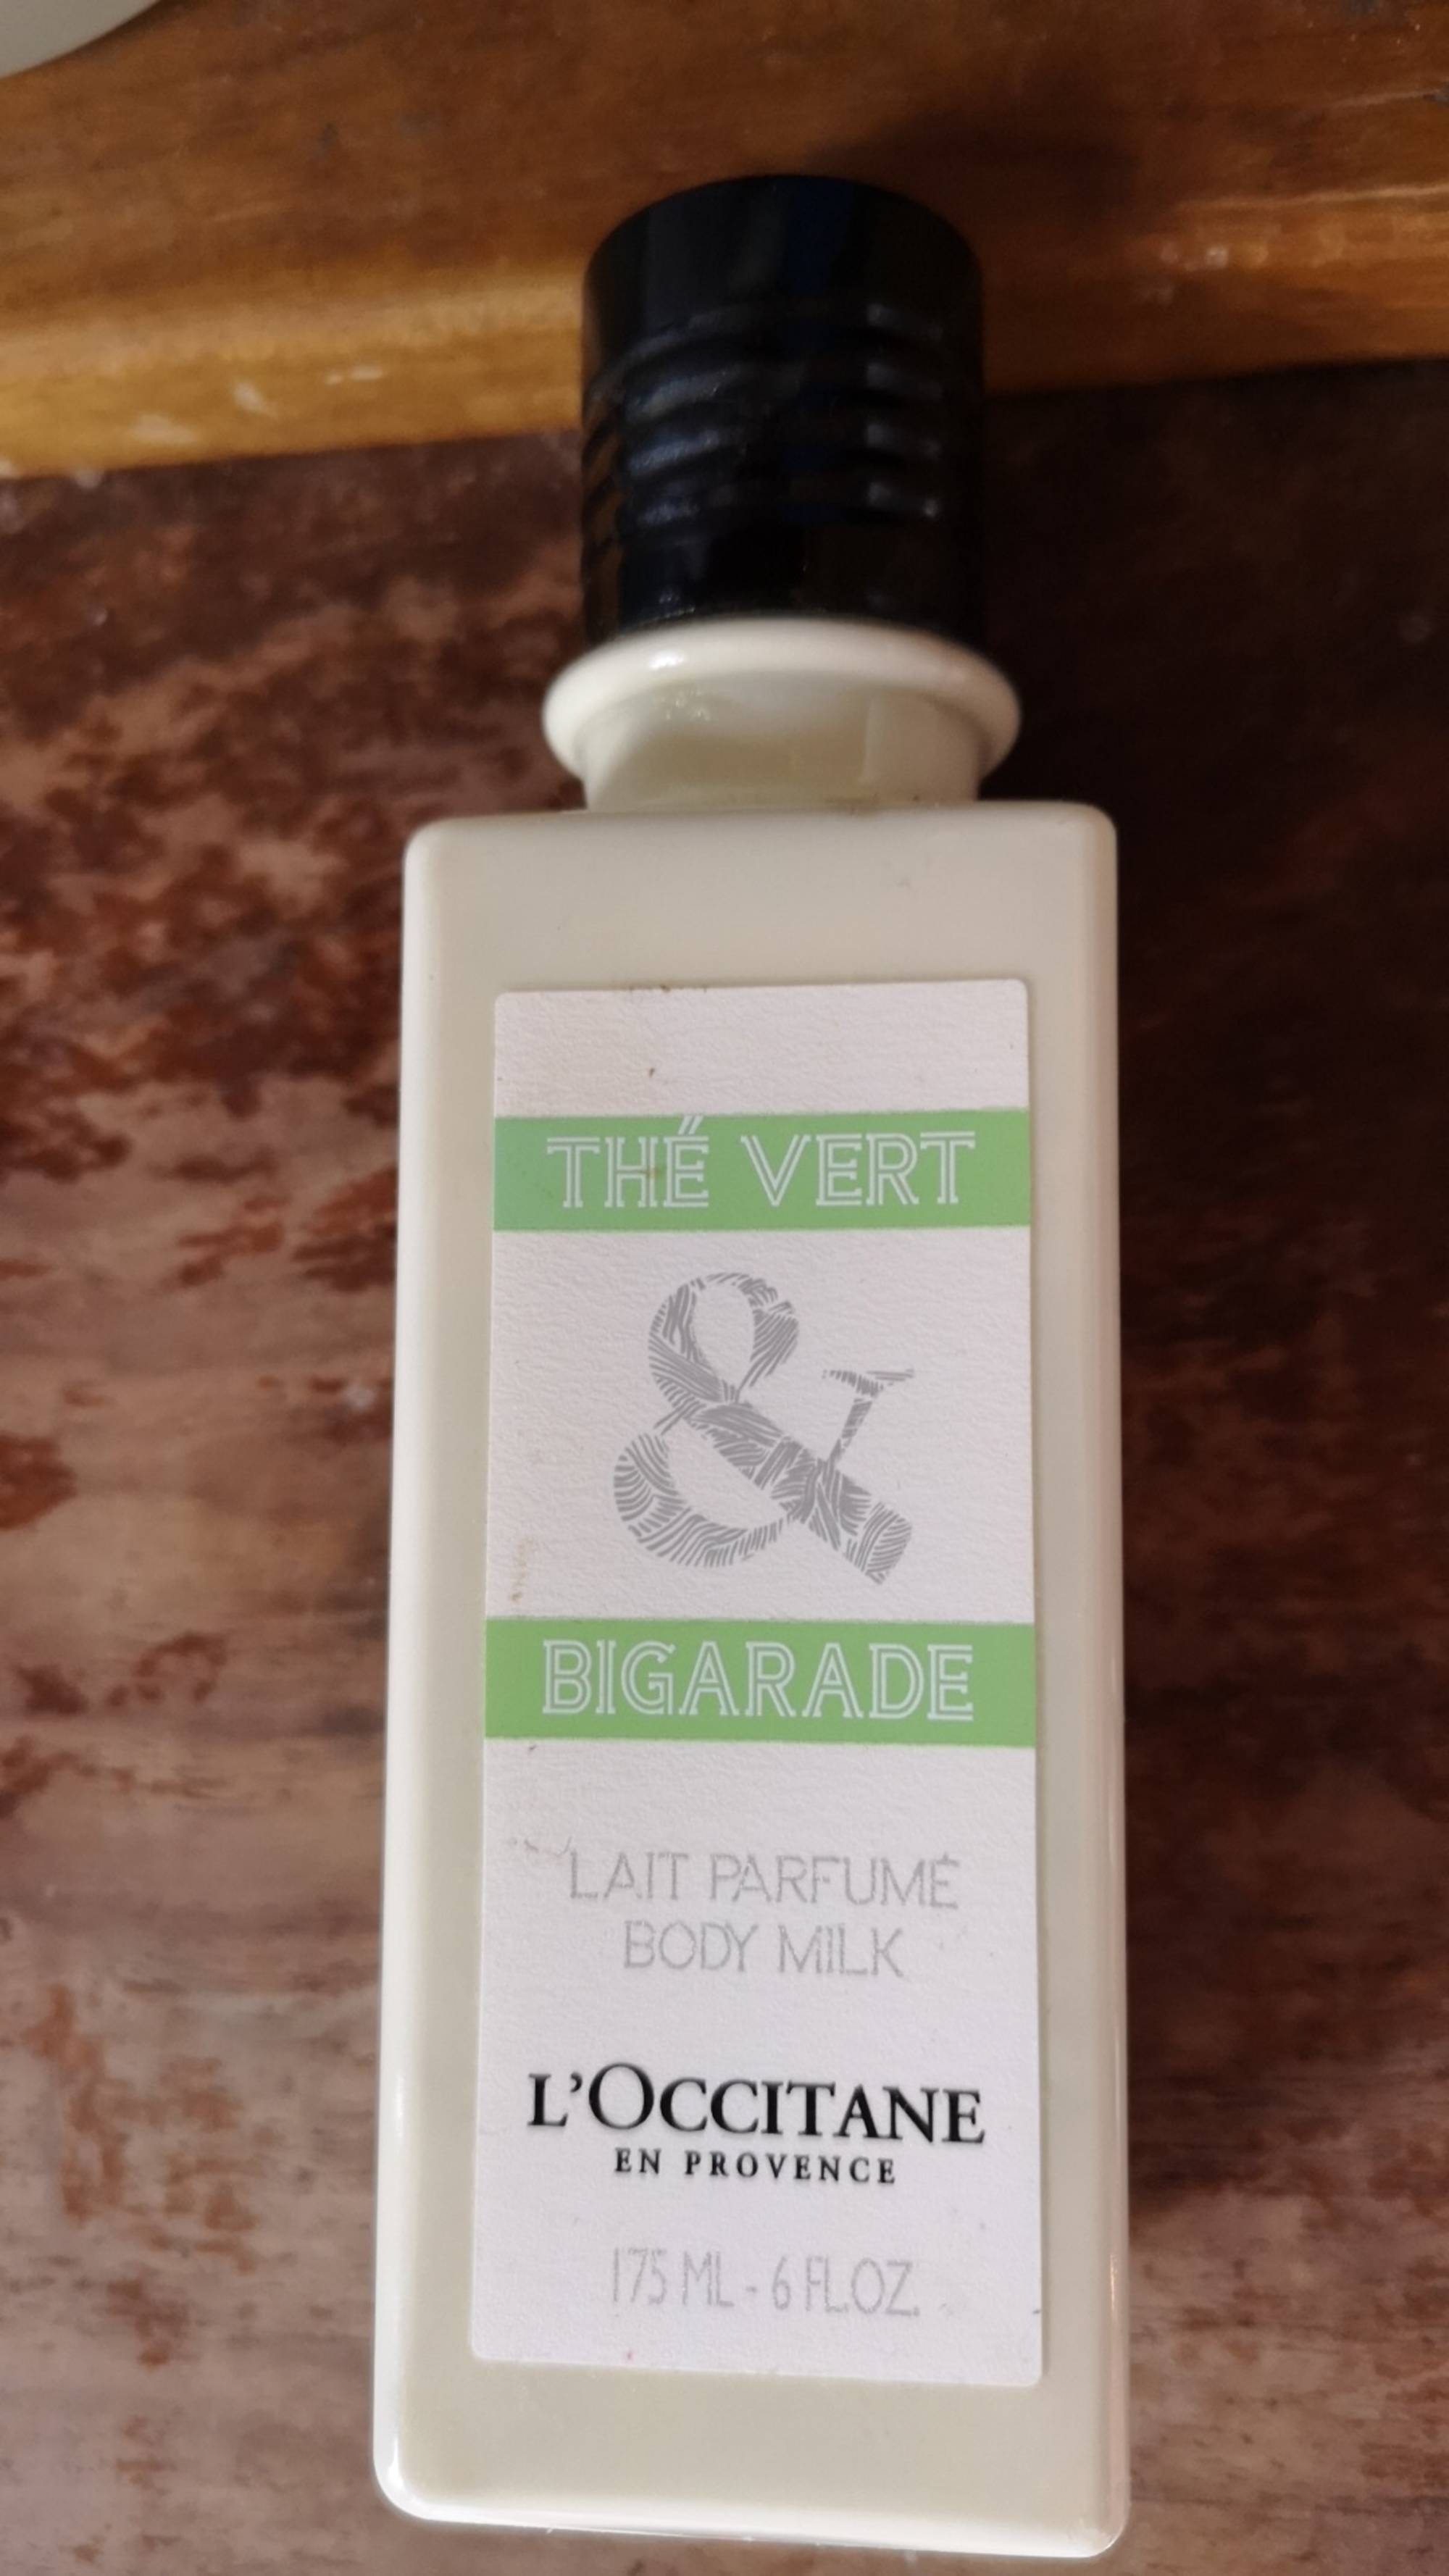 L'OCCITANE - Thé vert & bigarade - Lait parfumé